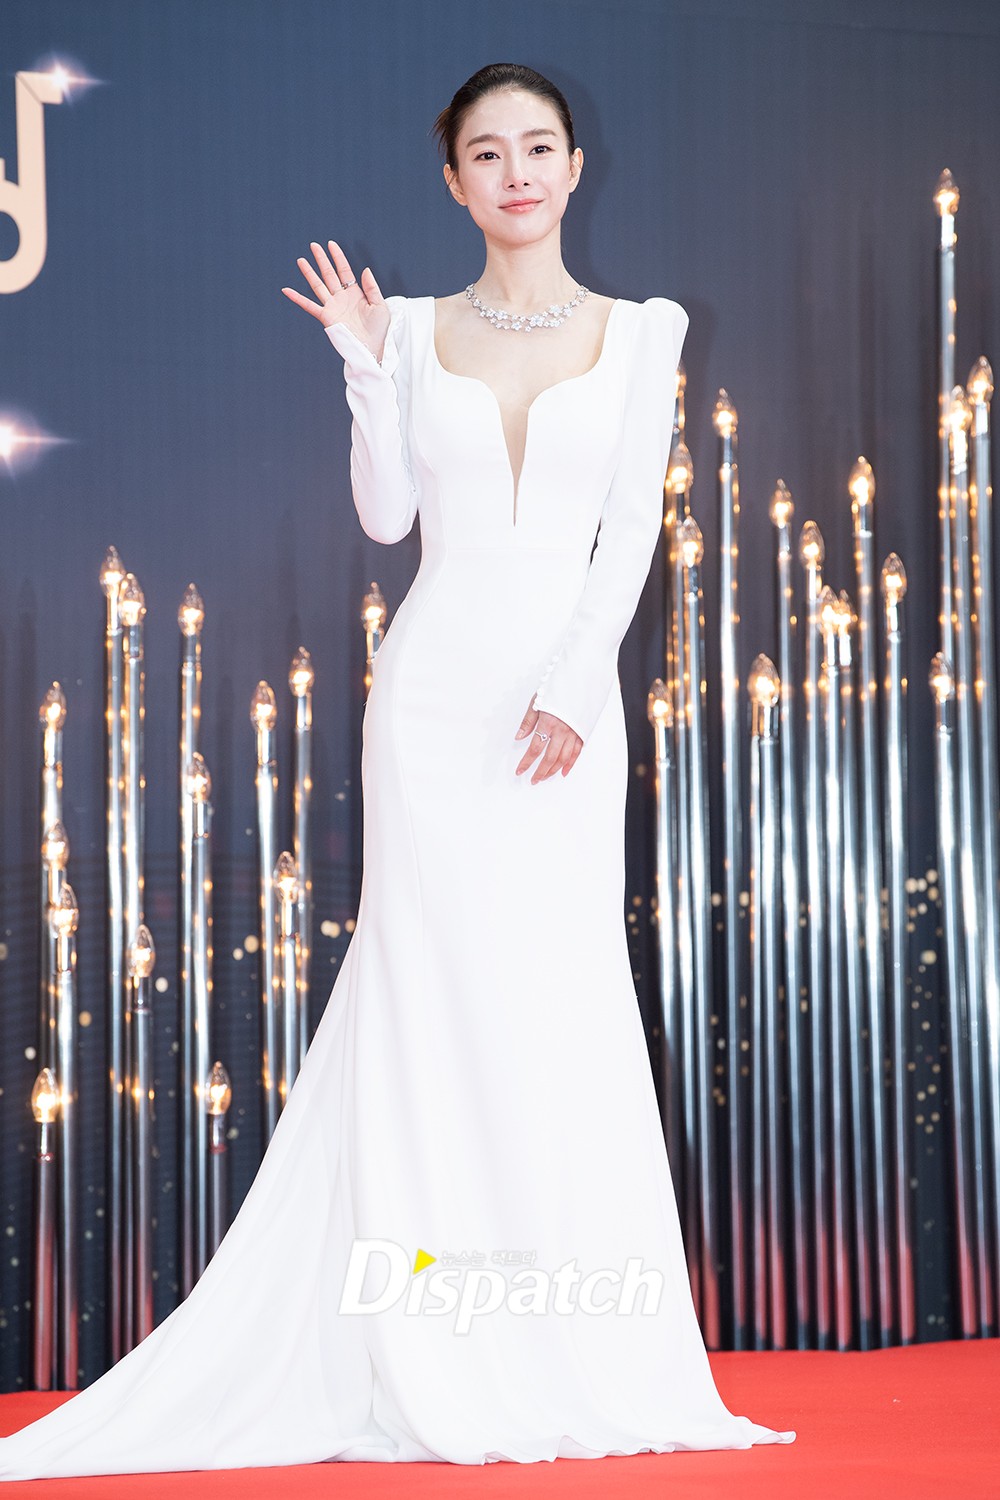 Thảm đỏ KBS Drama Awards: Seohyun và nàng cháo Vườn Sao Băng sắc vóc tuyệt mỹ đè bẹp Krystal, Ha Ji Won - D.O. (EXO) dẫn đầu đoàn sao váy áo lộng lẫy - Ảnh 4.